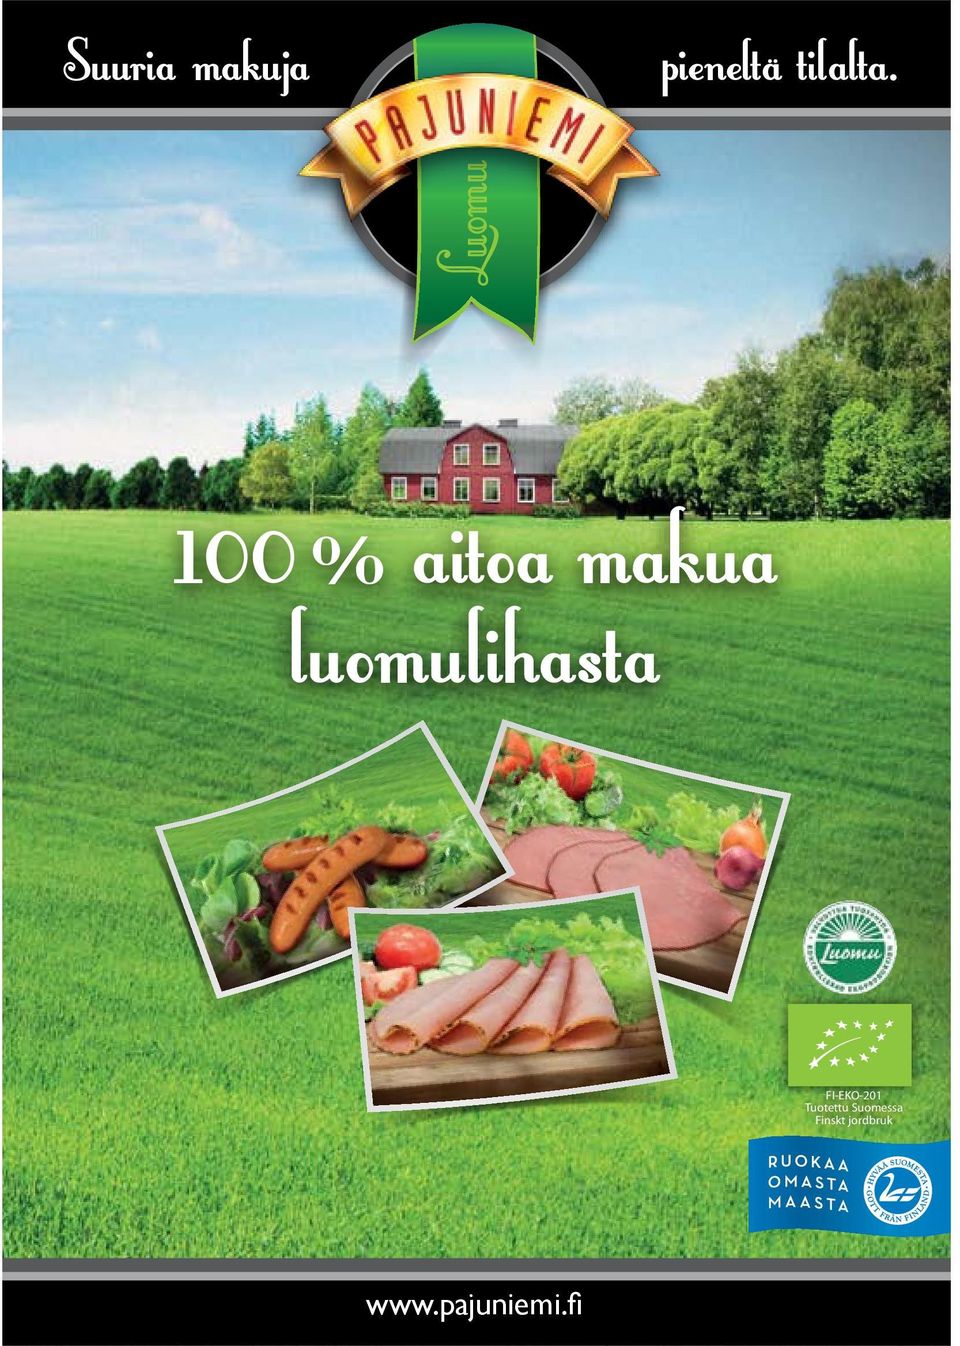 luomulihasta FI-EKO-201 Tuotettu